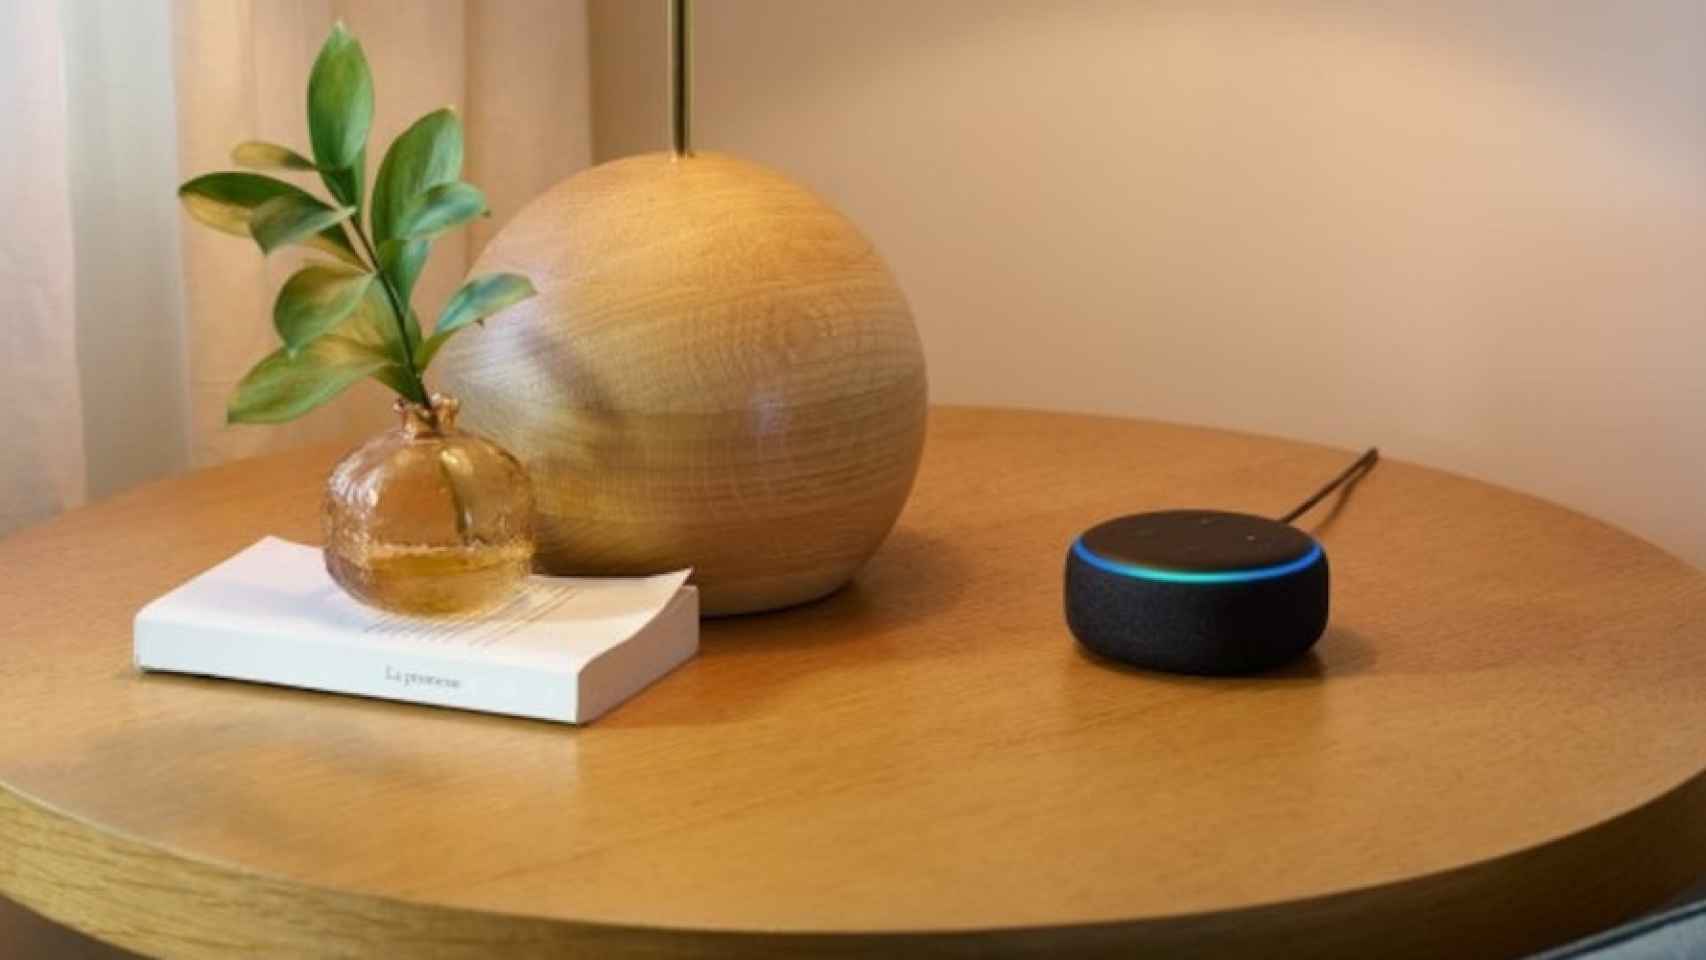 El Echo Dot con Alexa integrada se convierte en uno de los mejores